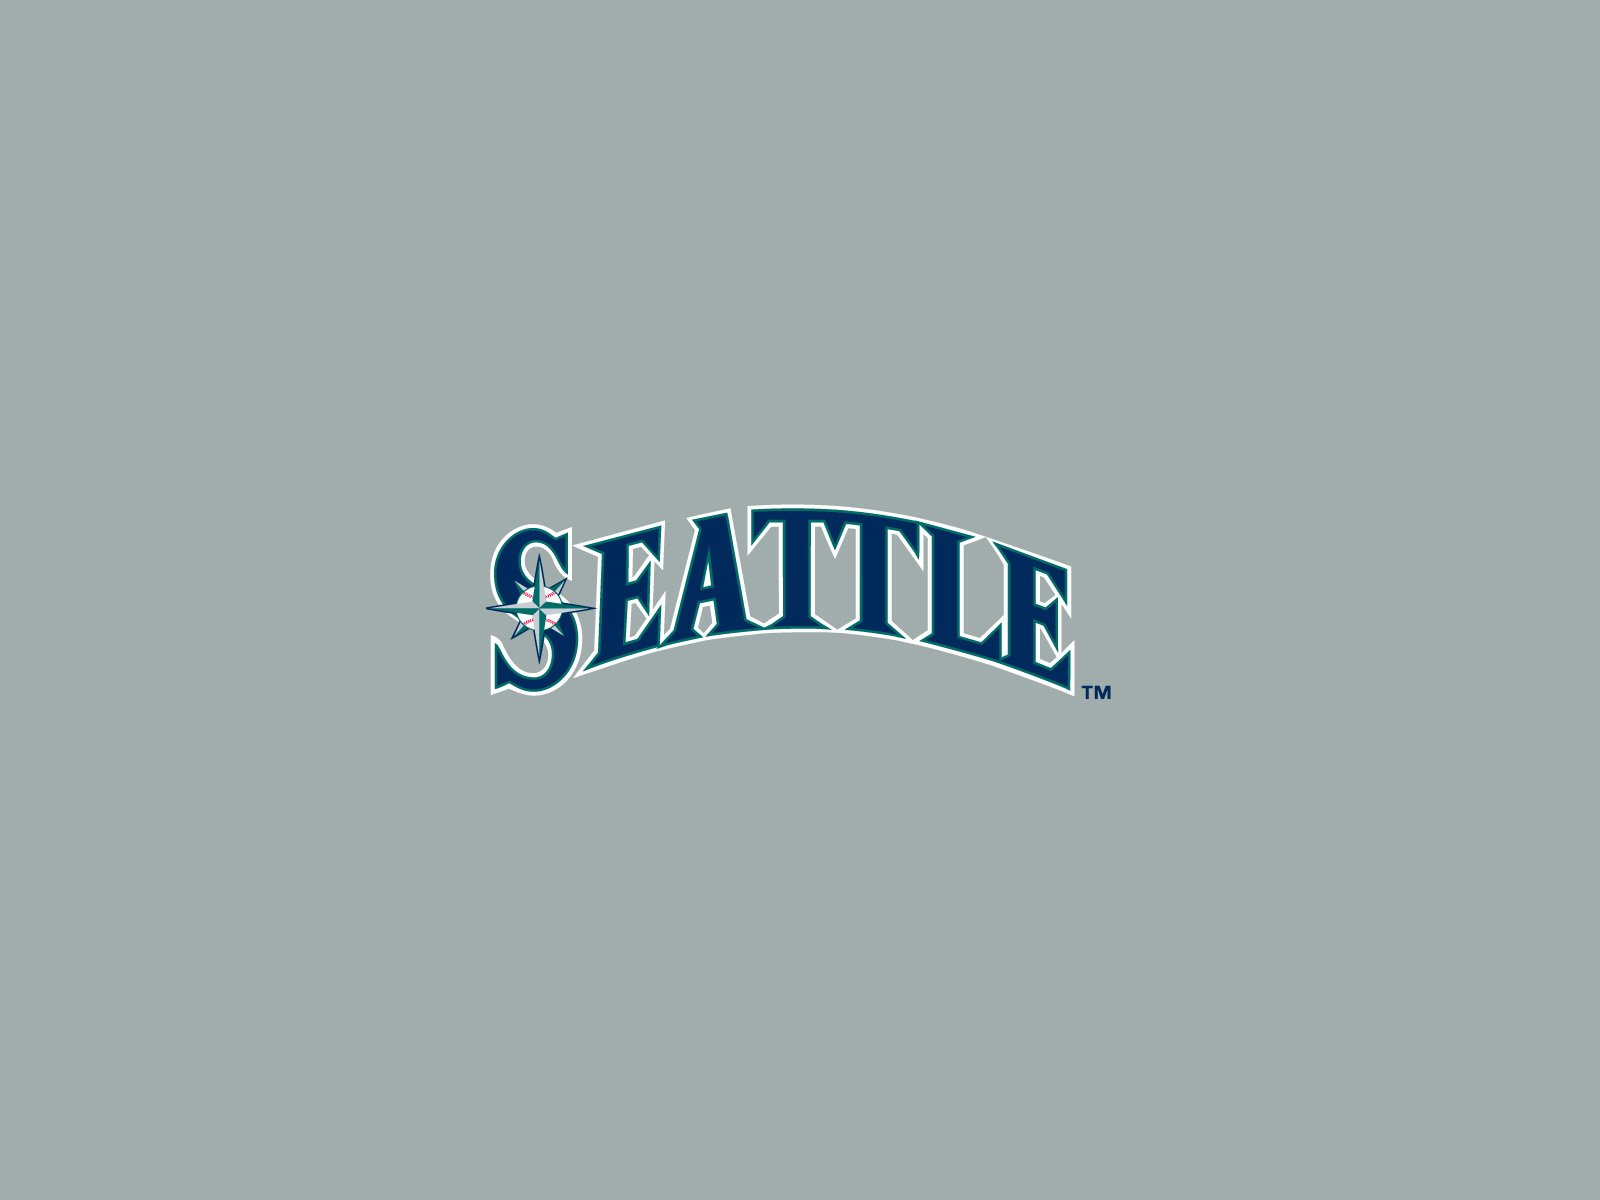 50+] Seattle Mariners iPhone Wallpaper - WallpaperSafari